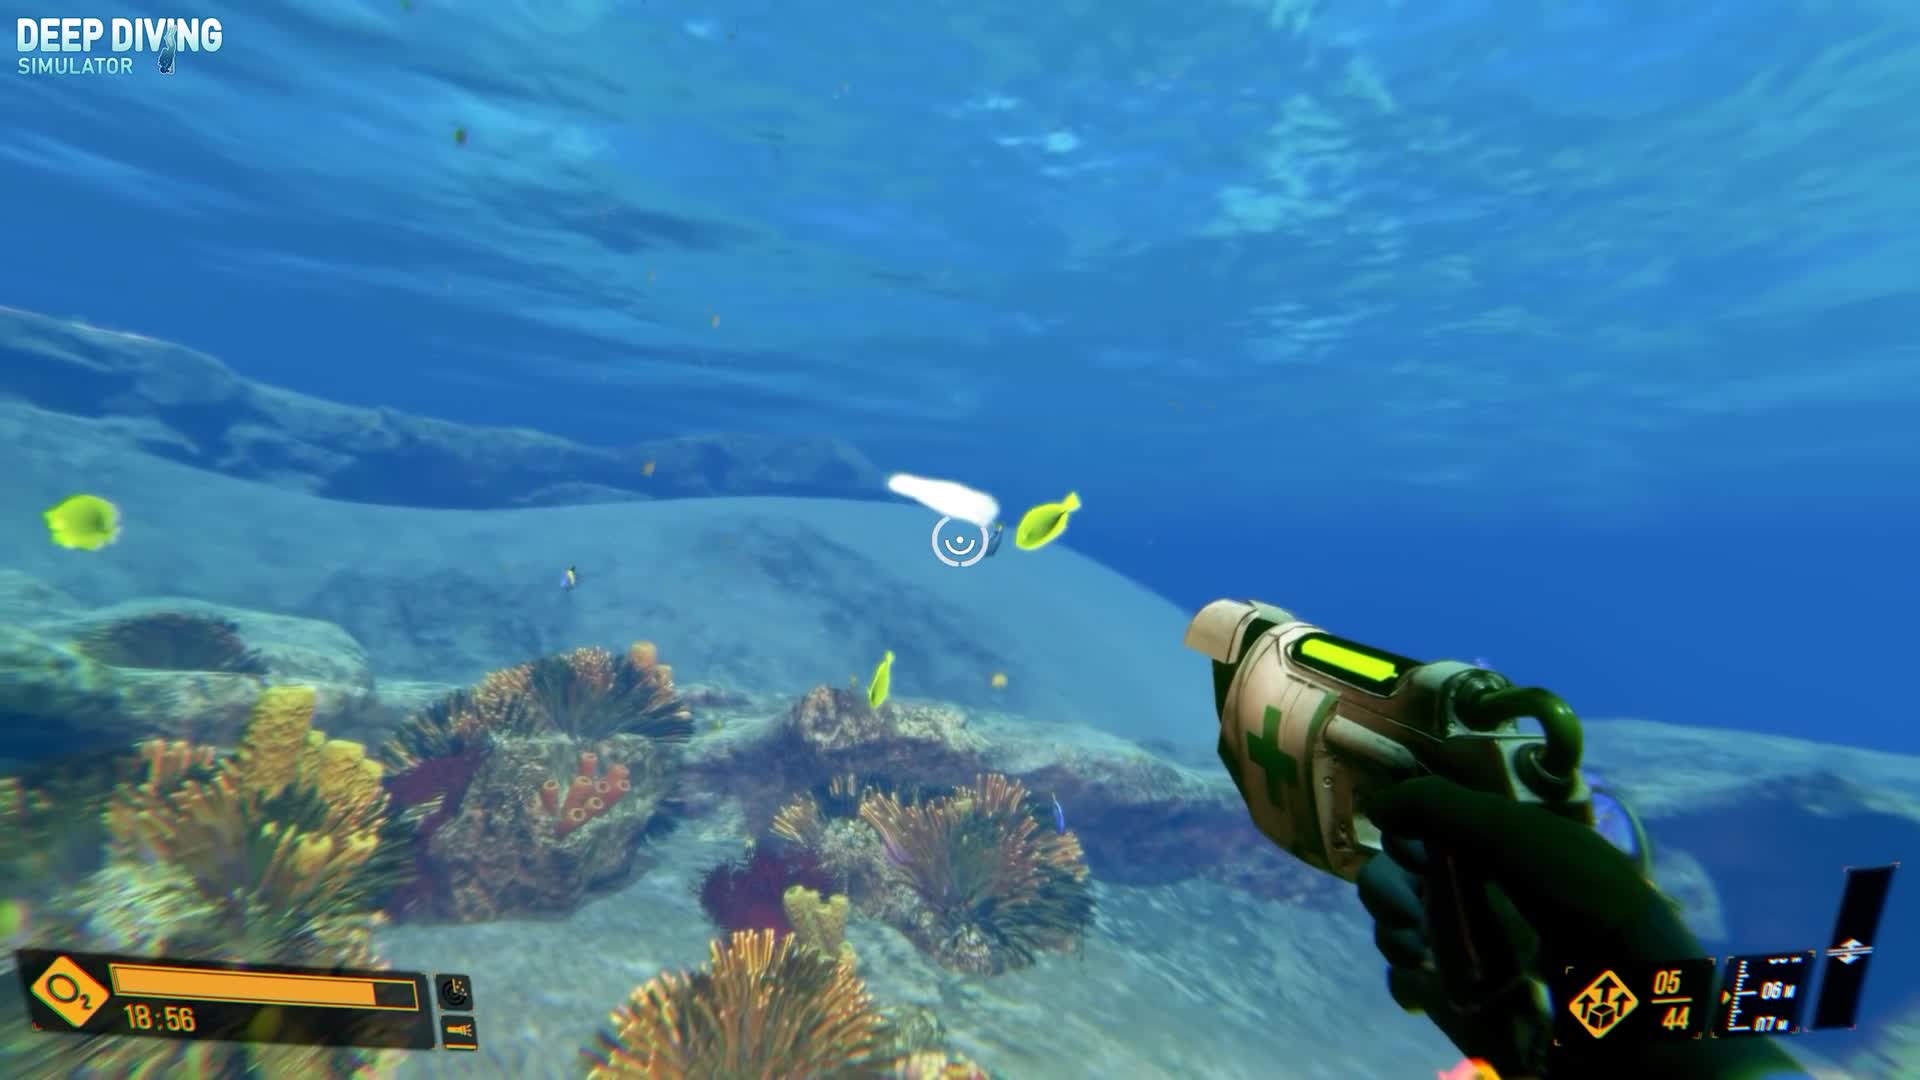 Deep Diving Simulator prina mokr gameplay trailer 